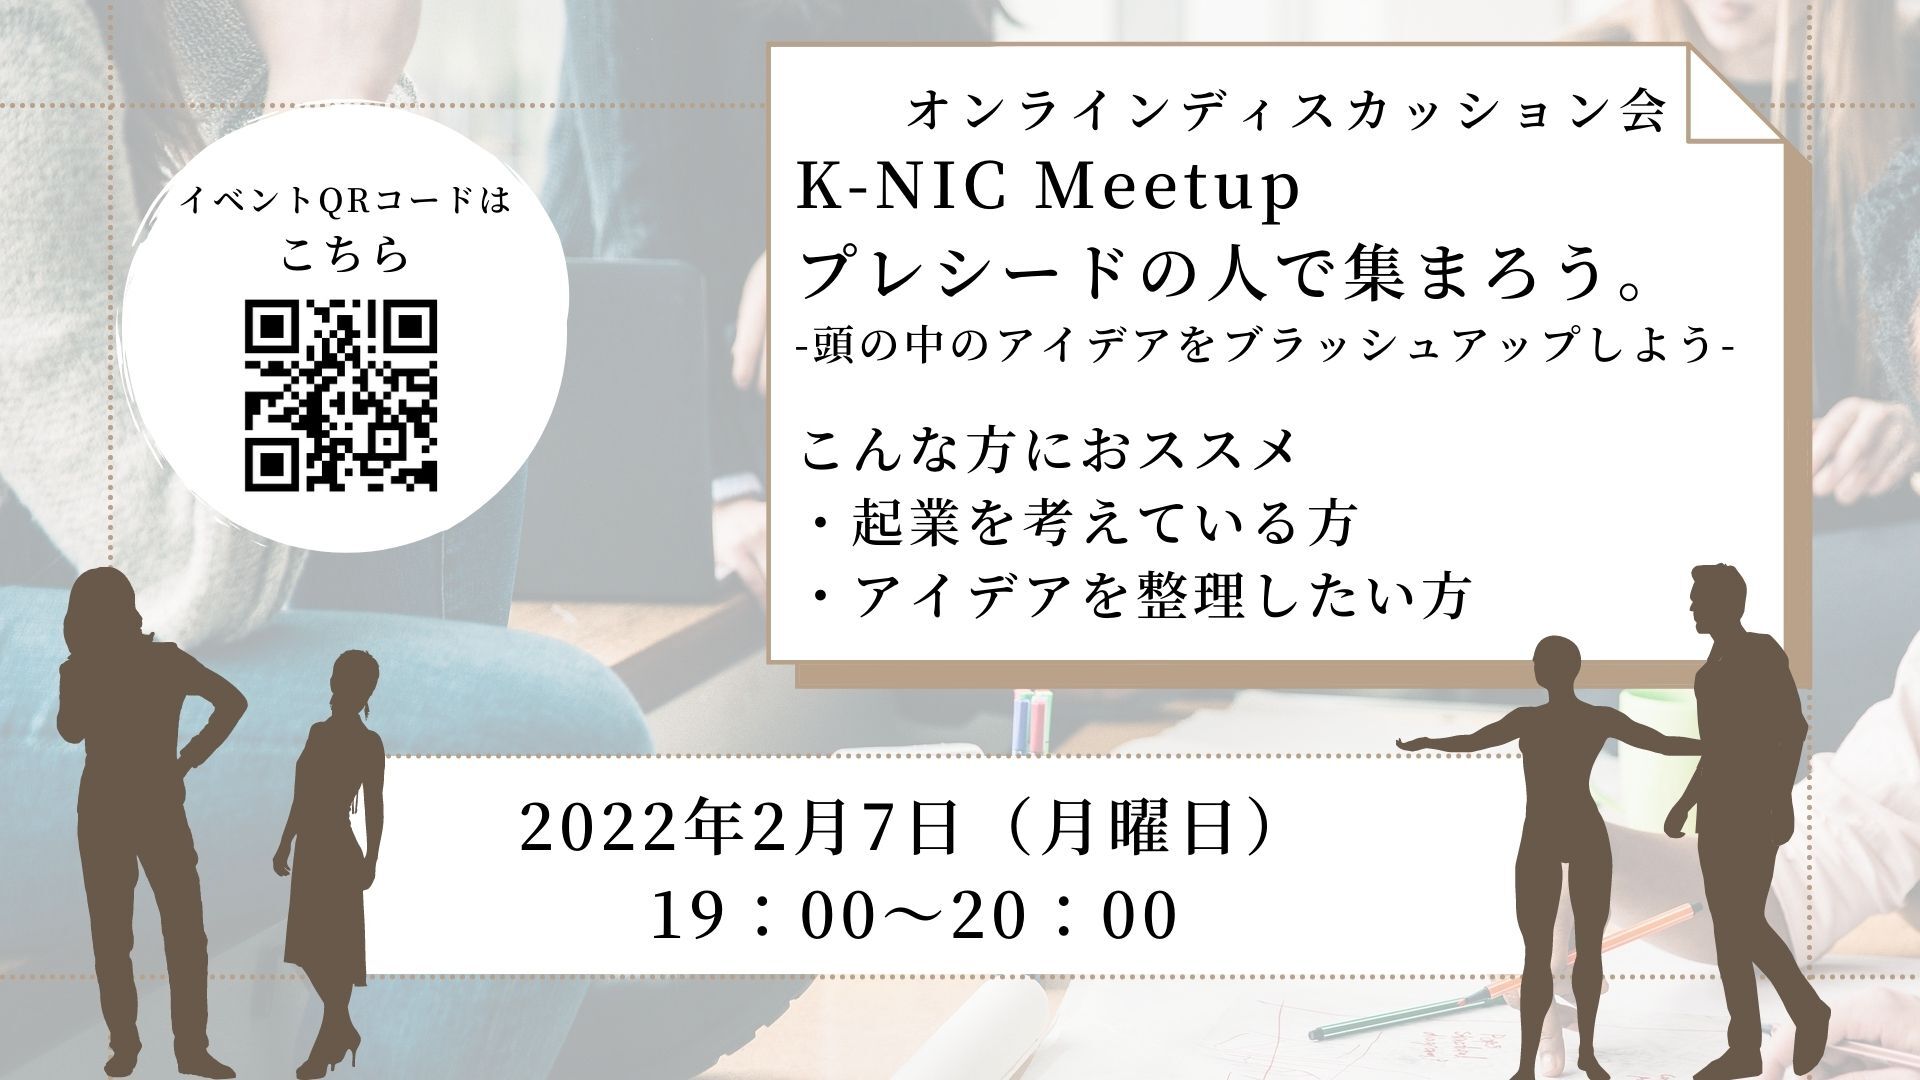 【2/7 開催】K-NIC Meetup プレシードの人たちで集まろう。